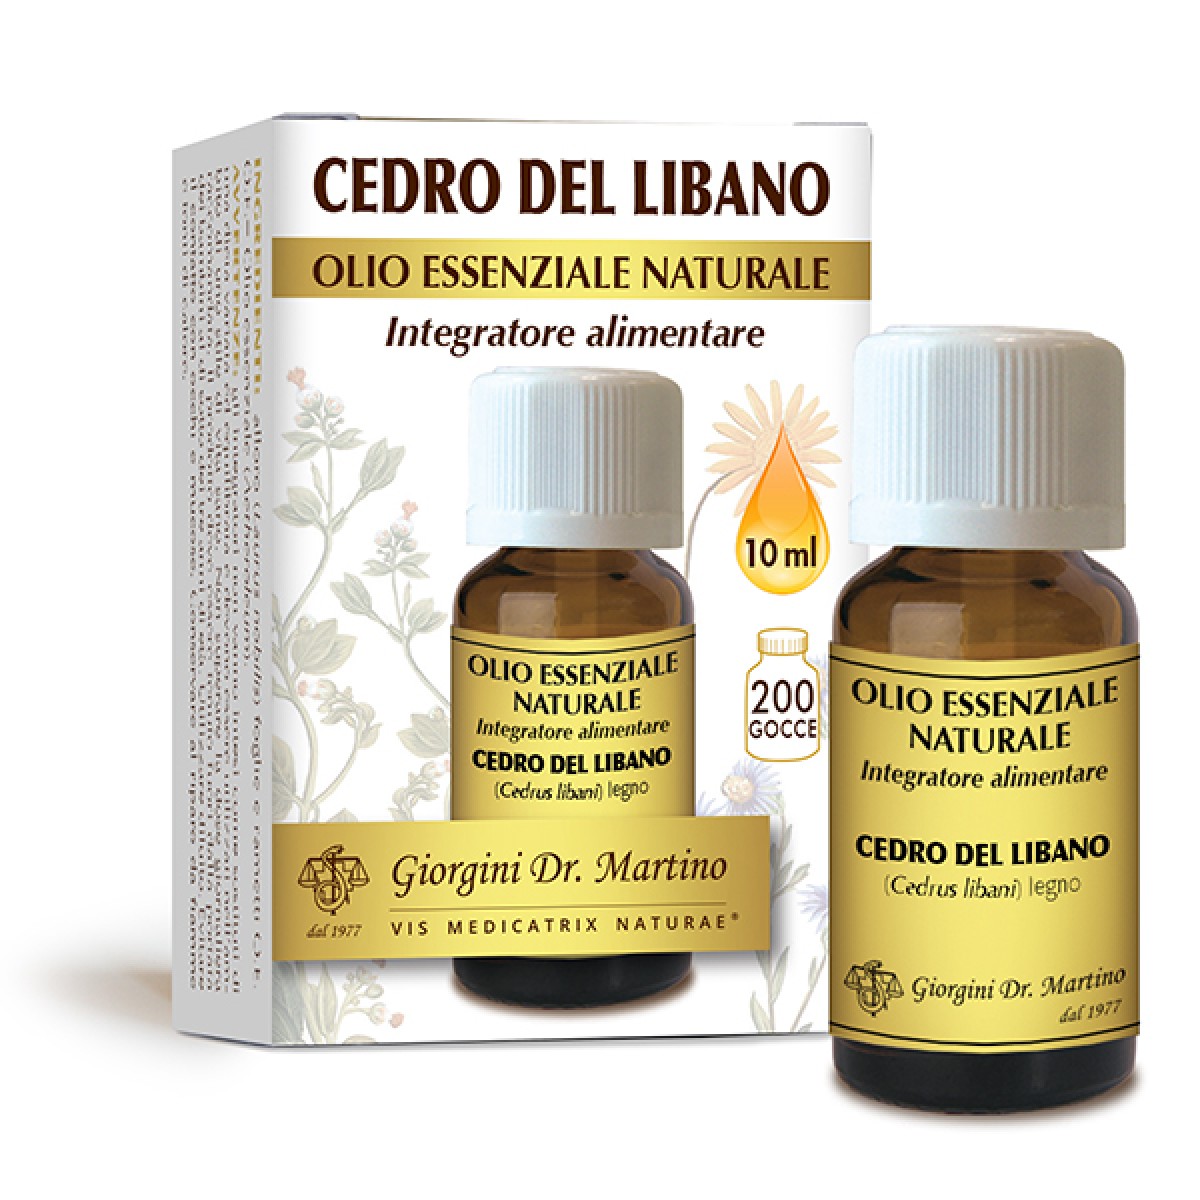 Image of Cedro Del Libano Olio Essenziale Naturale Dr. Giorgini 10ml